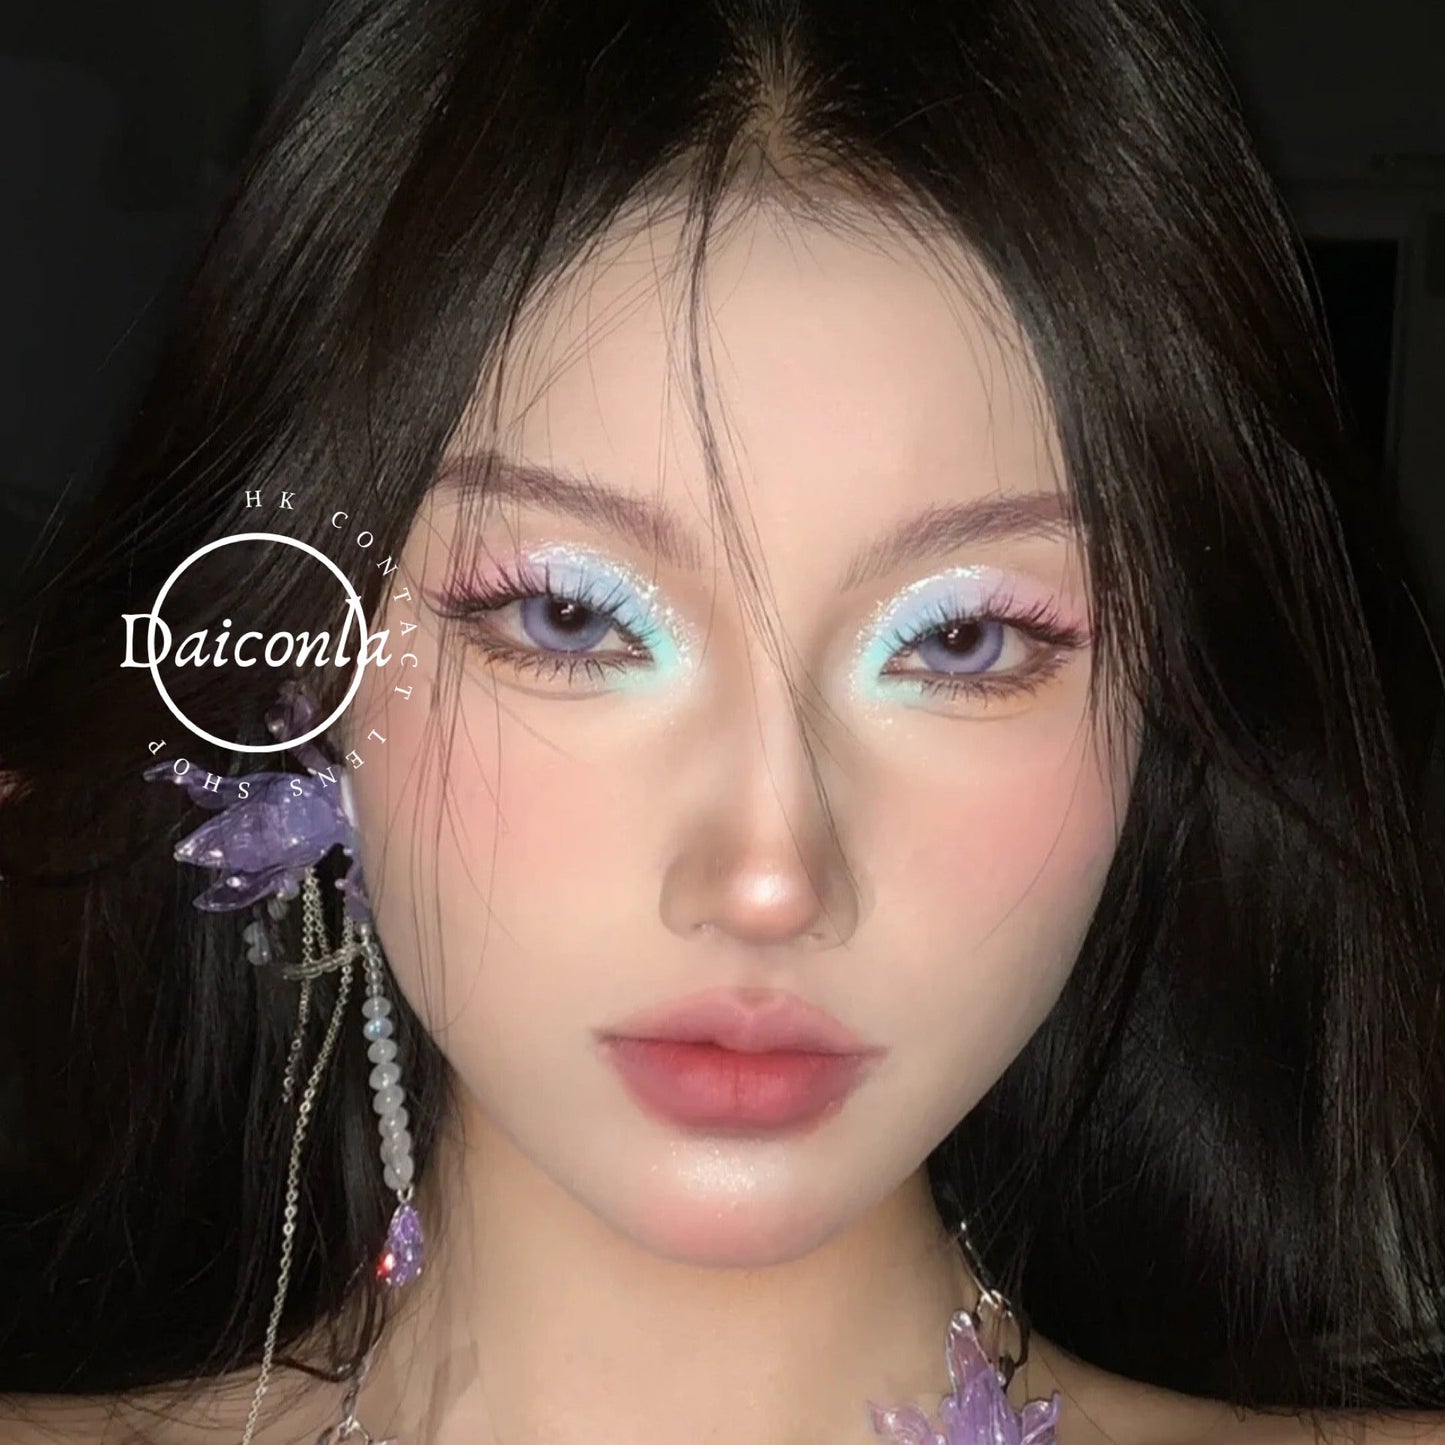 現貨清貨優惠 韓國製造 DreamconCgirl  少女漫淚光紫 14.5mm 年拋 單片裝